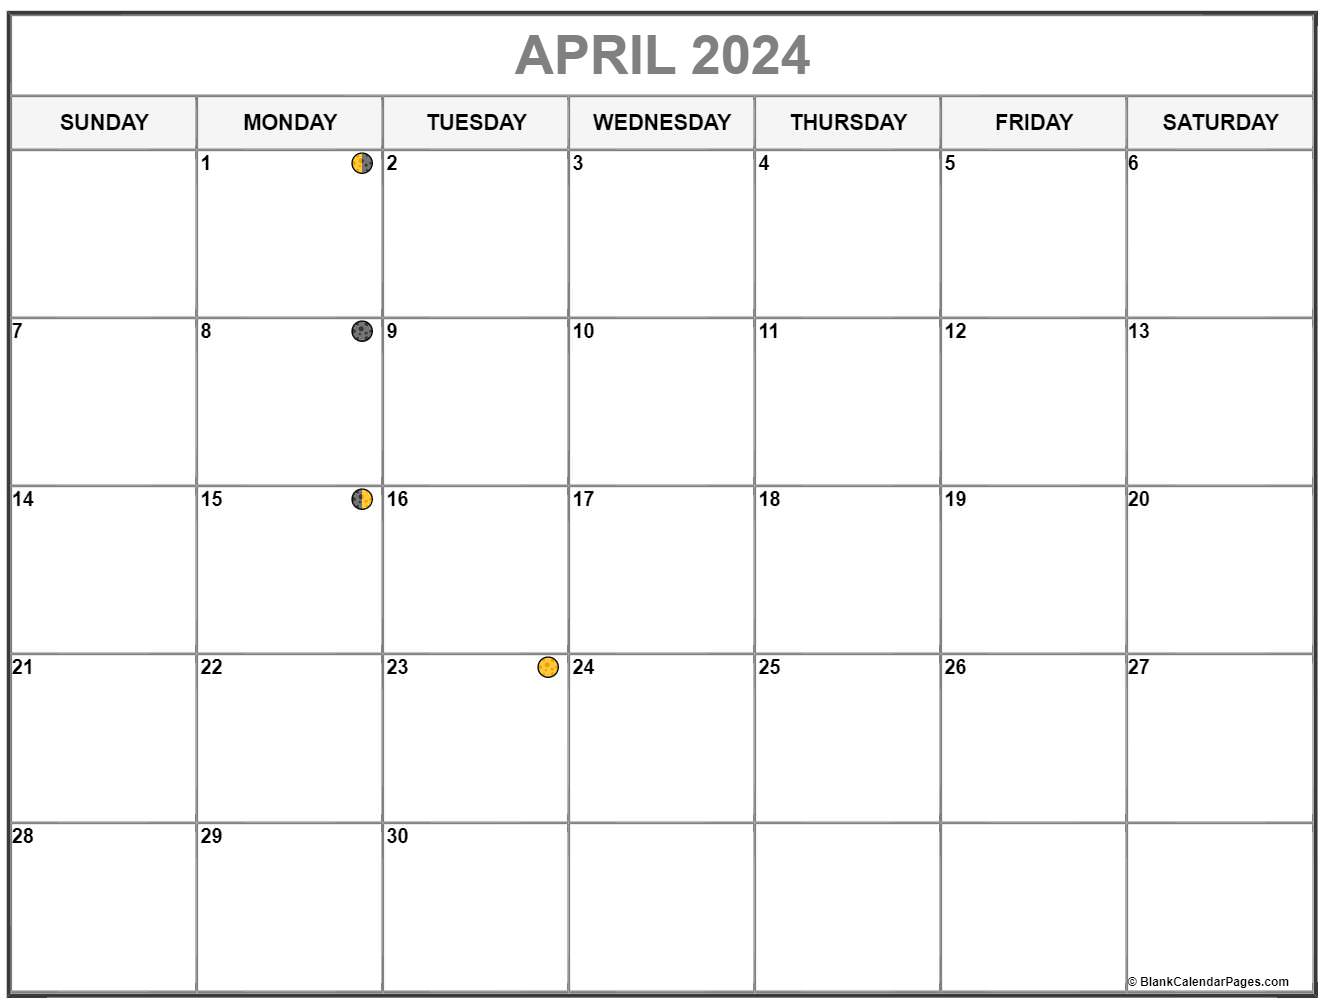 April 2024 Lunar Calendar Tessy Karisa